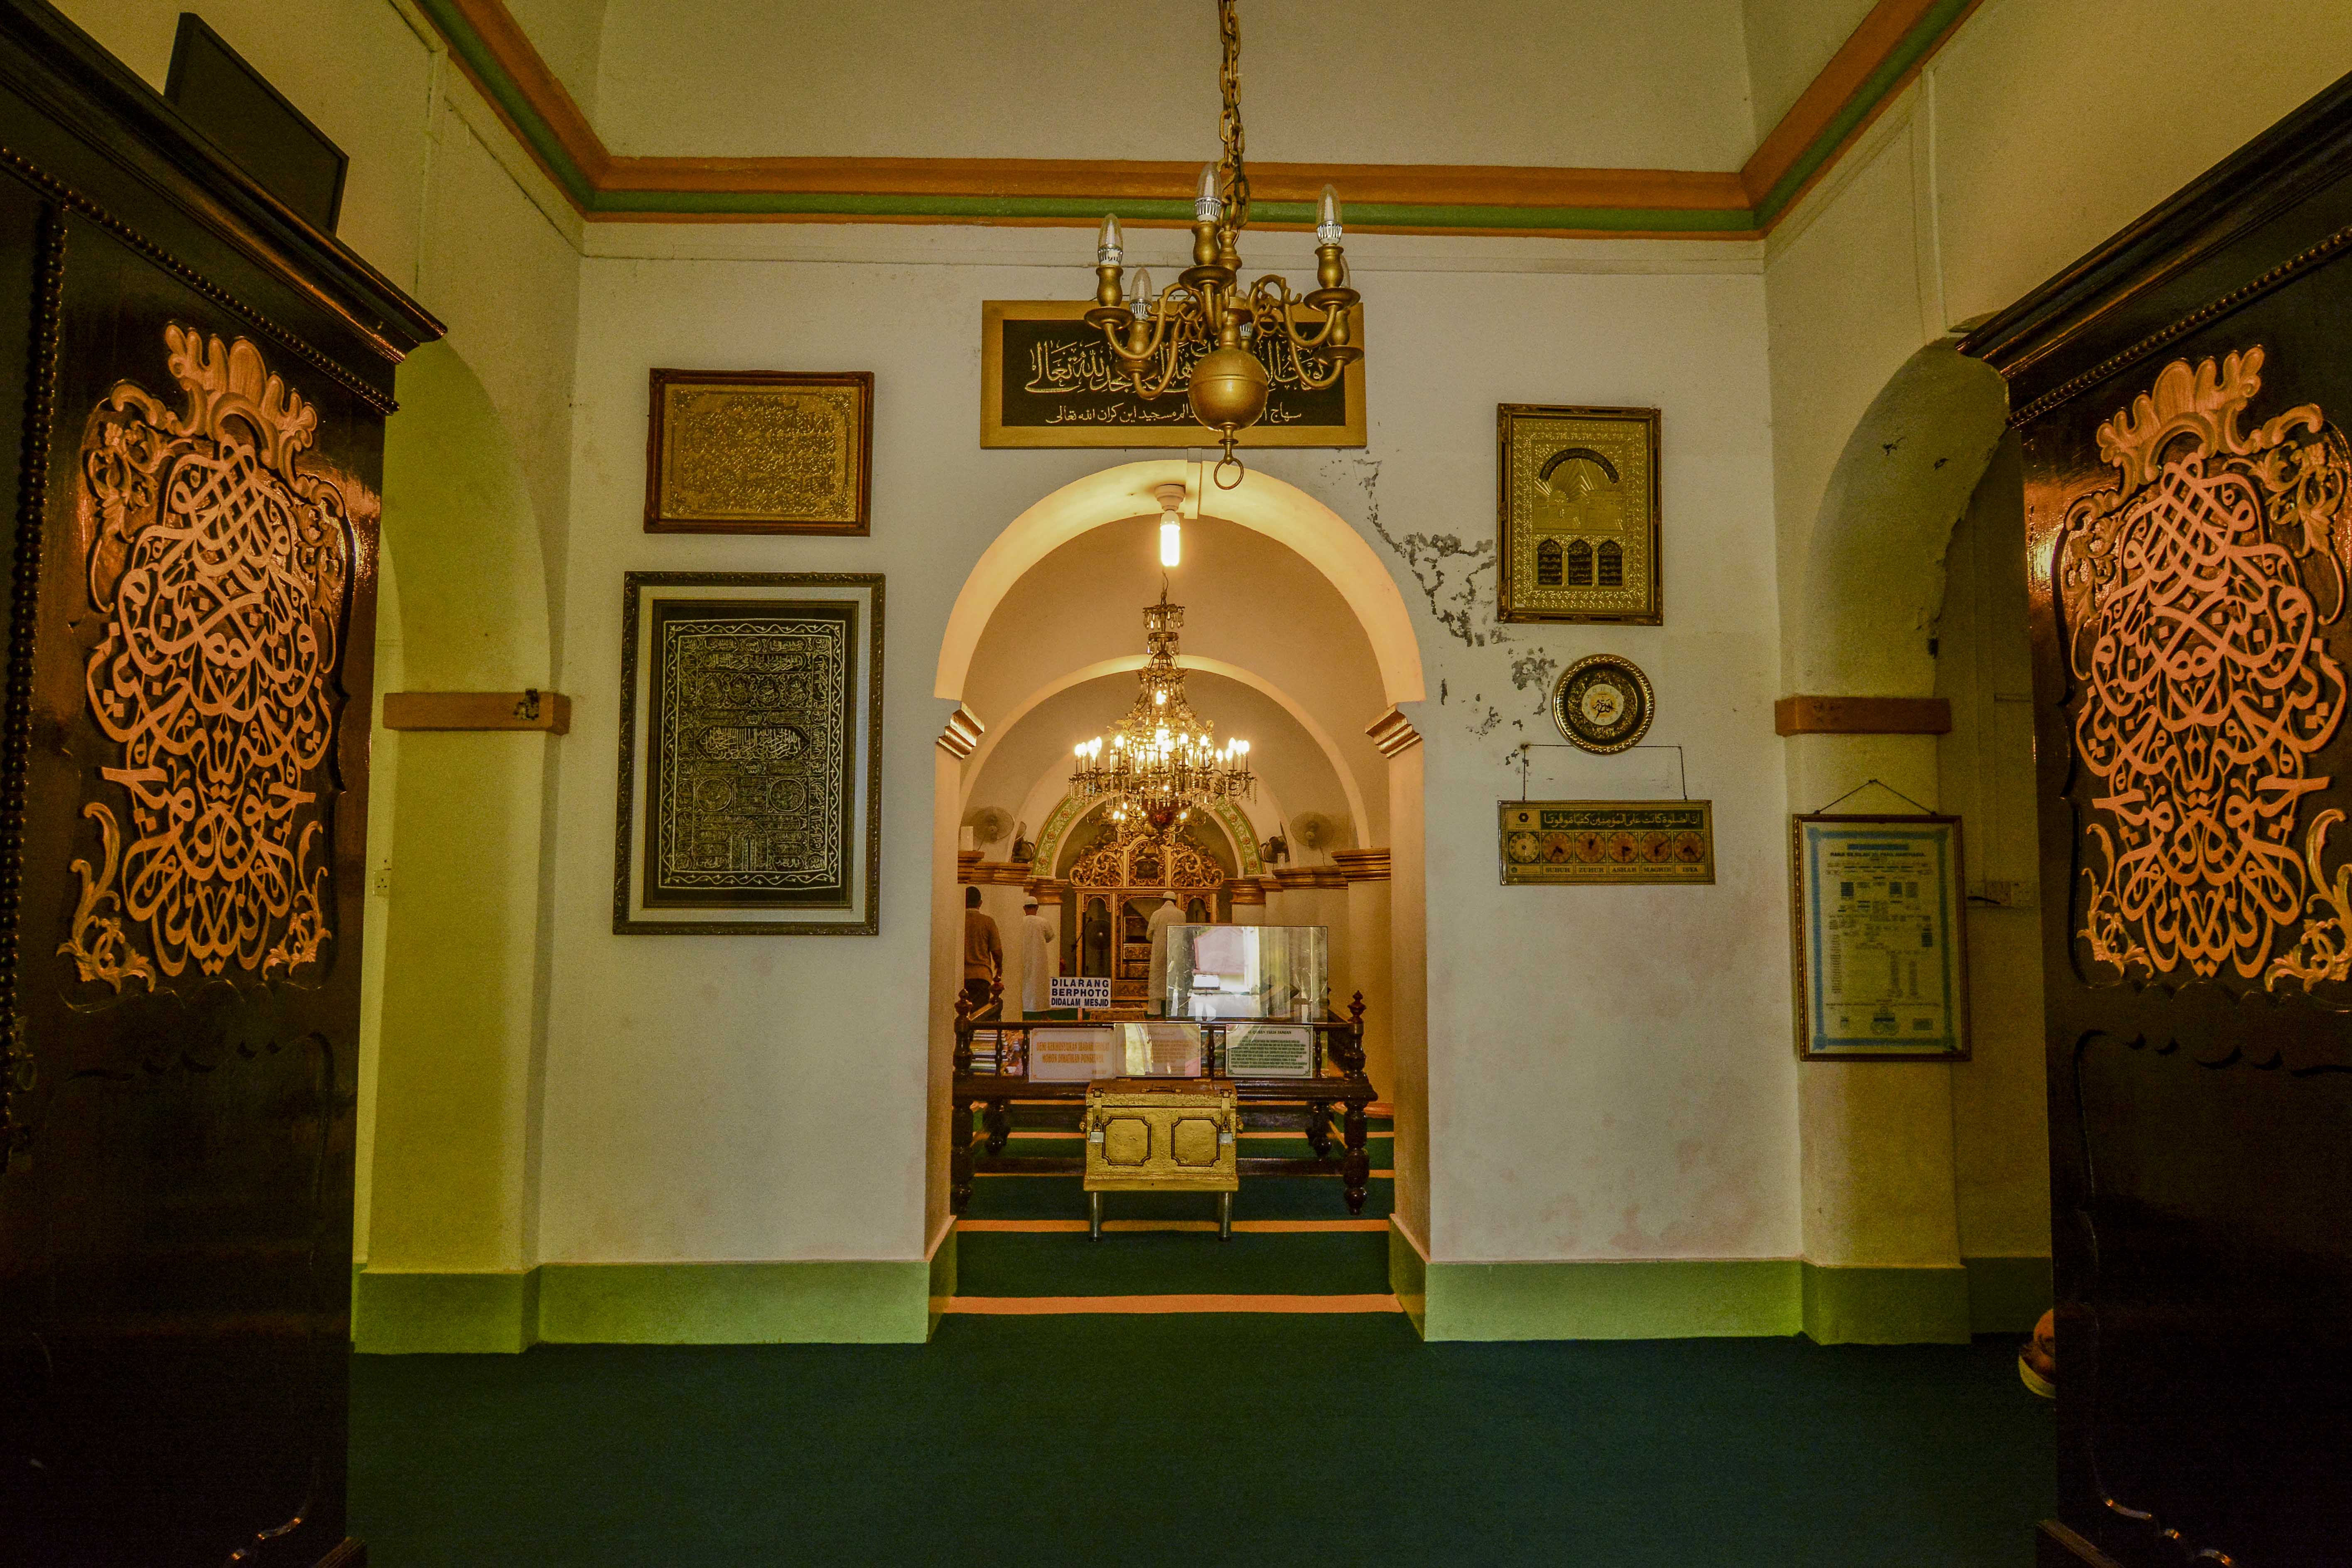 Beberapa interior dan furniture dari mesjid sudah berusia sangat tua (dok.pribadi)